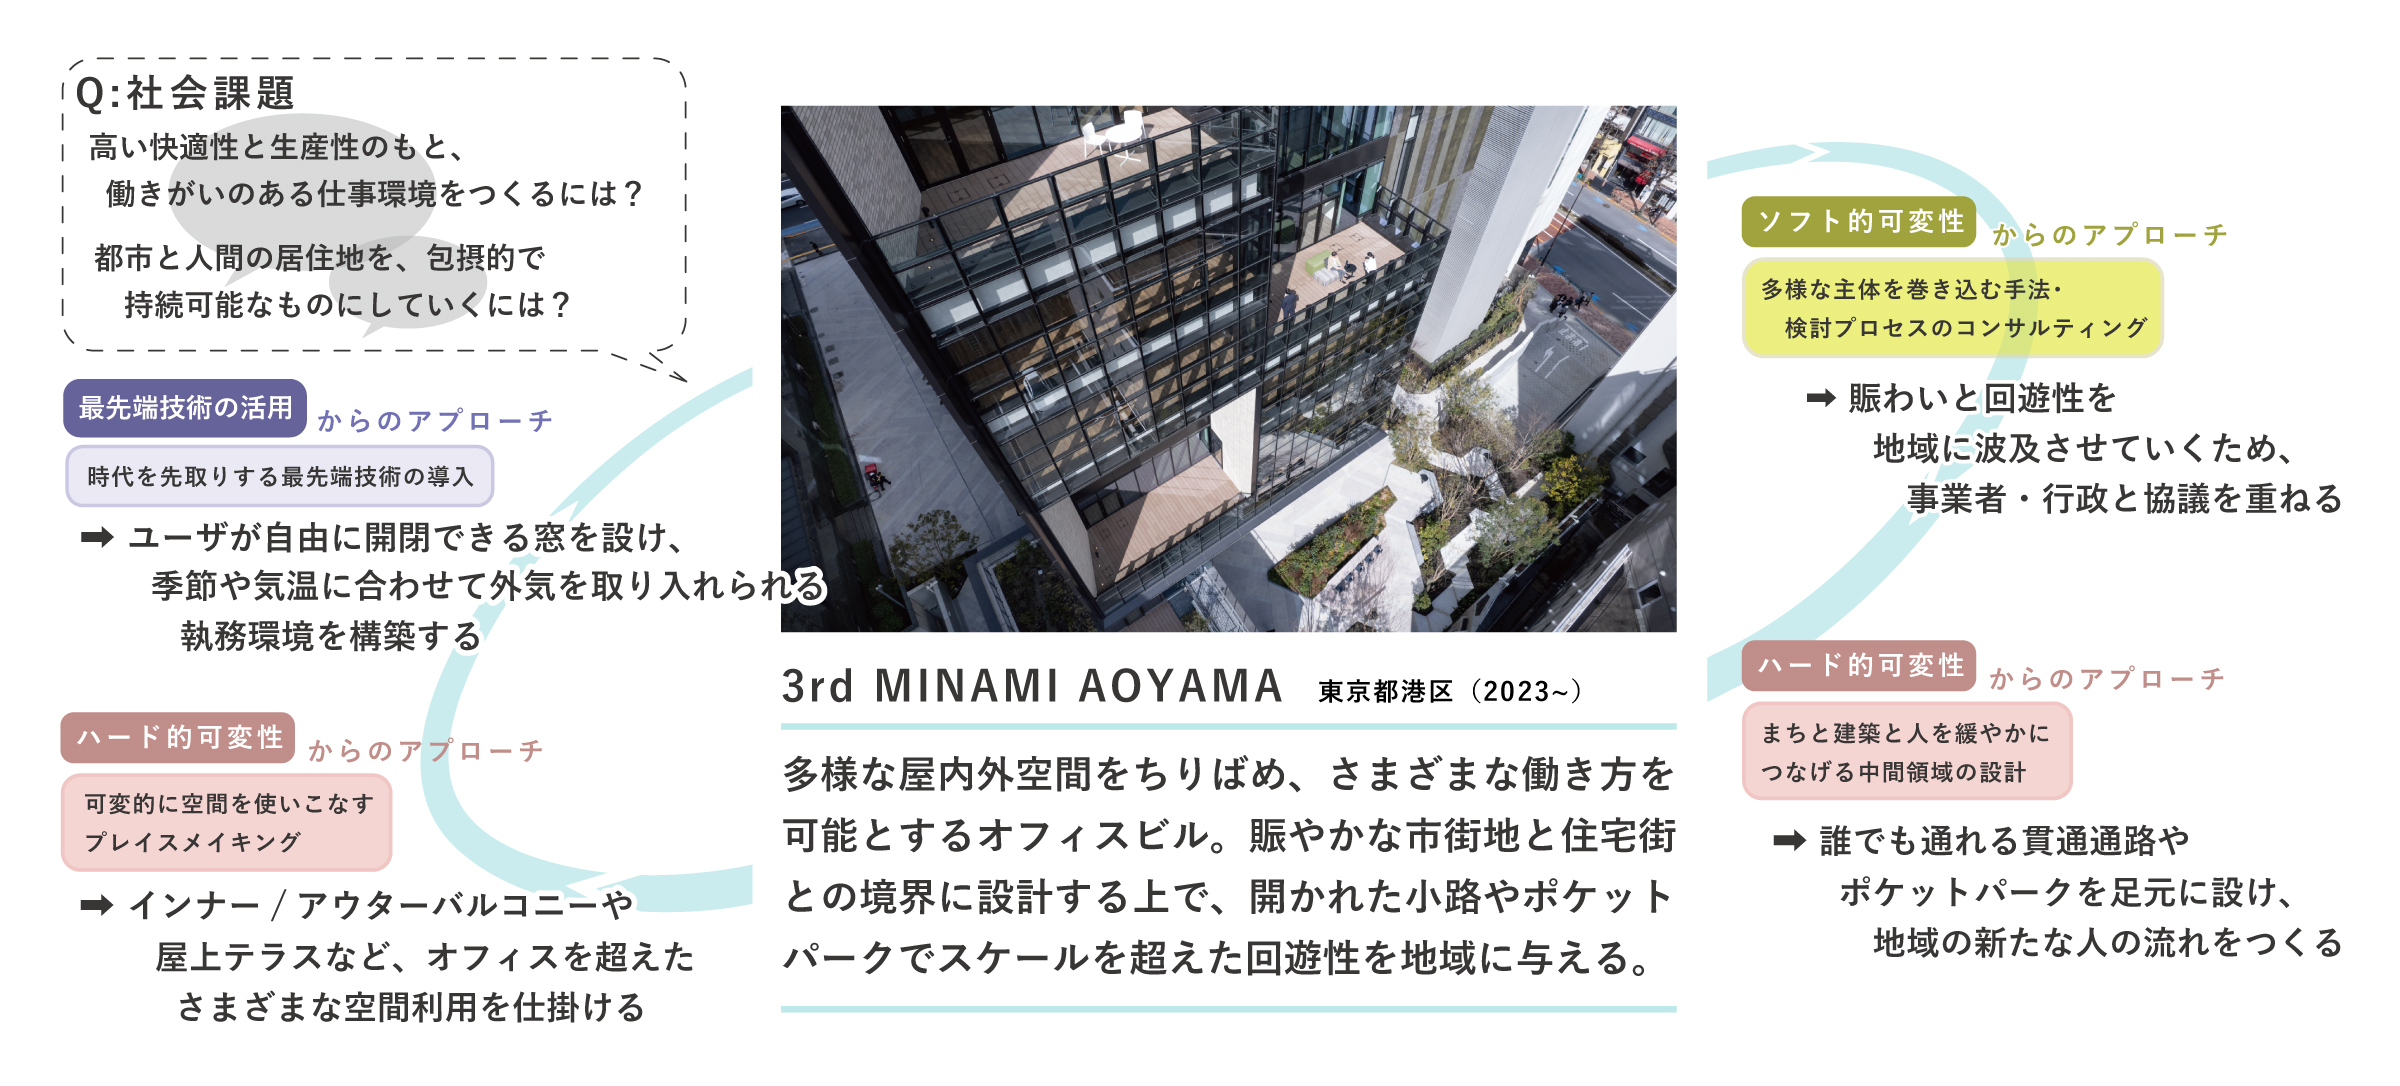 「ホワイトインフラ思考」で読み解くプロジェクト例 ①　3rd MINAMI AOYAMA